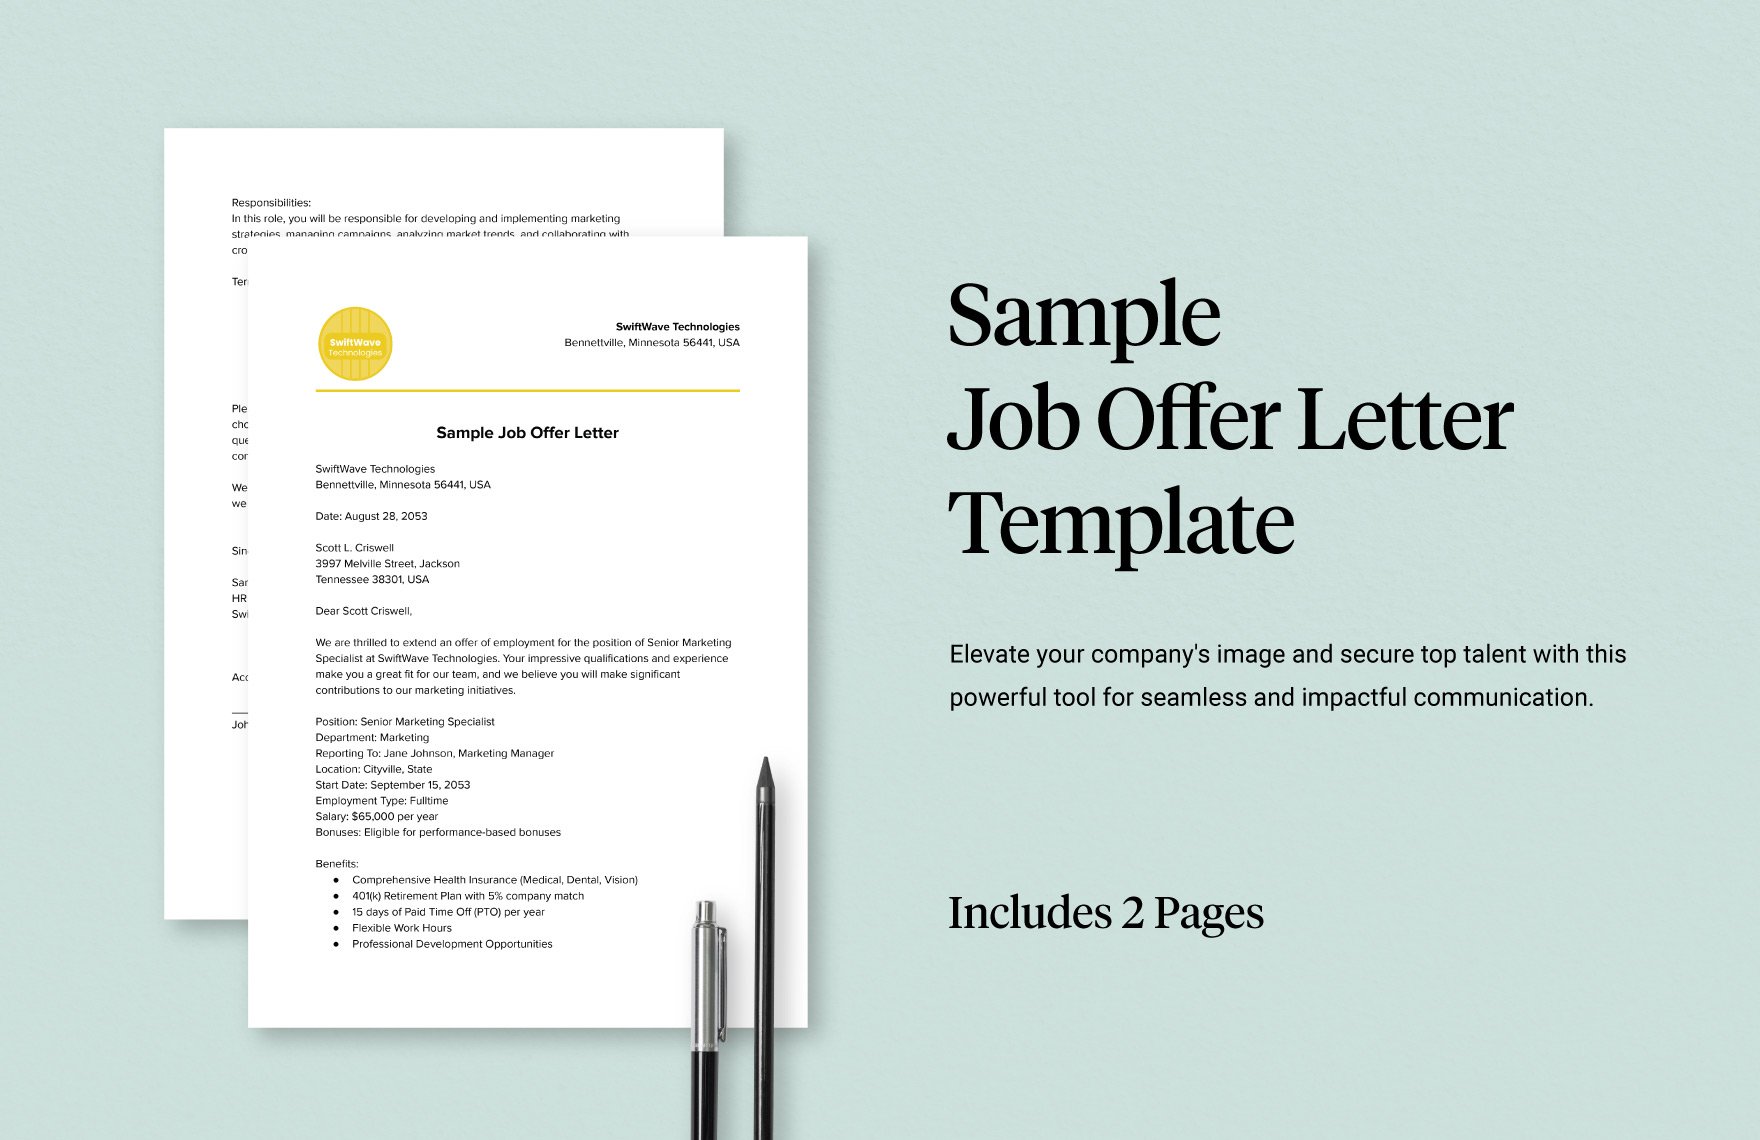 Sample Job Offer Letter Template